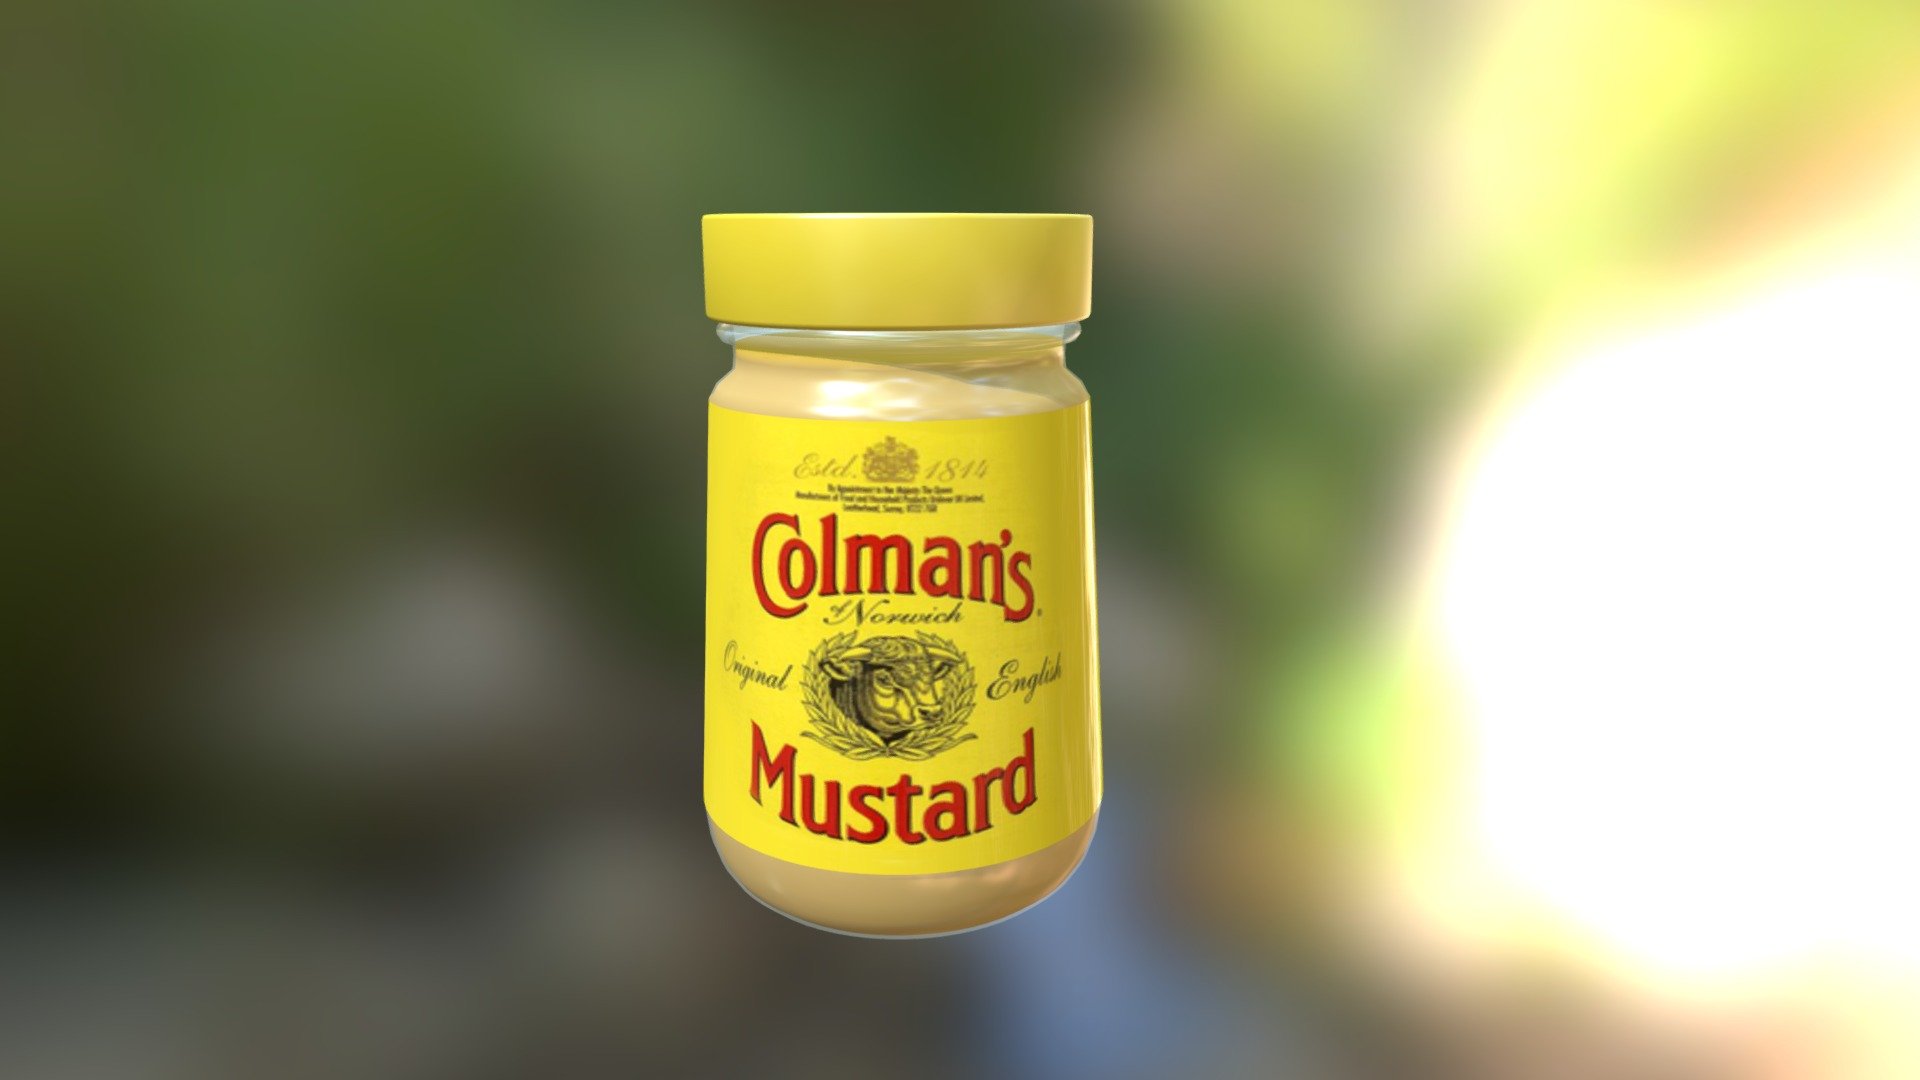 Colman's mustard - Colman's mustard - 3D model by zzubnik 3d model